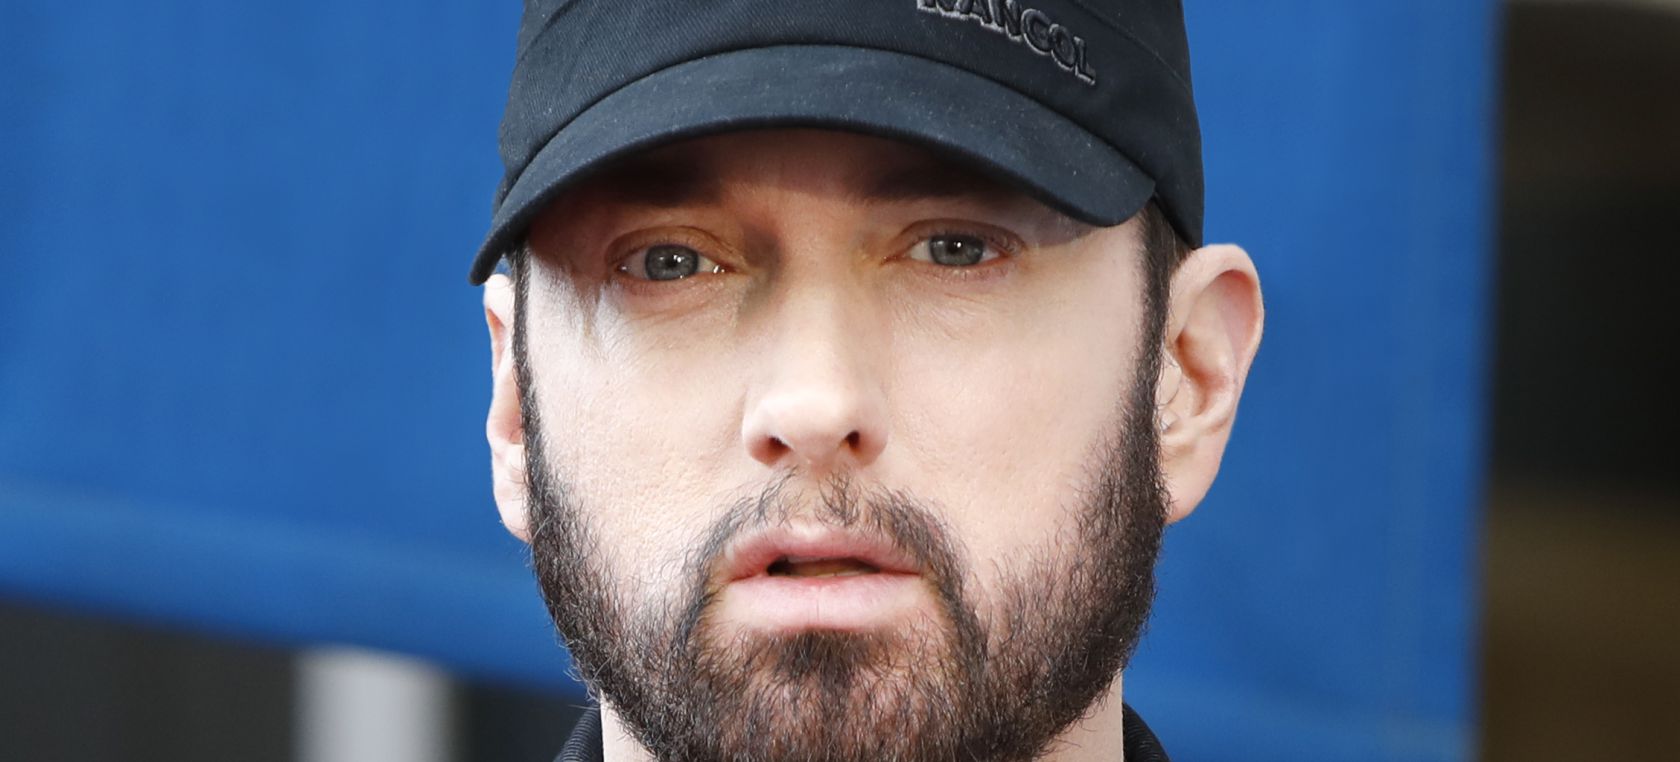 Eminem celebra sus 50 millones de suscriptores en YouTube con este vídeo gracioso